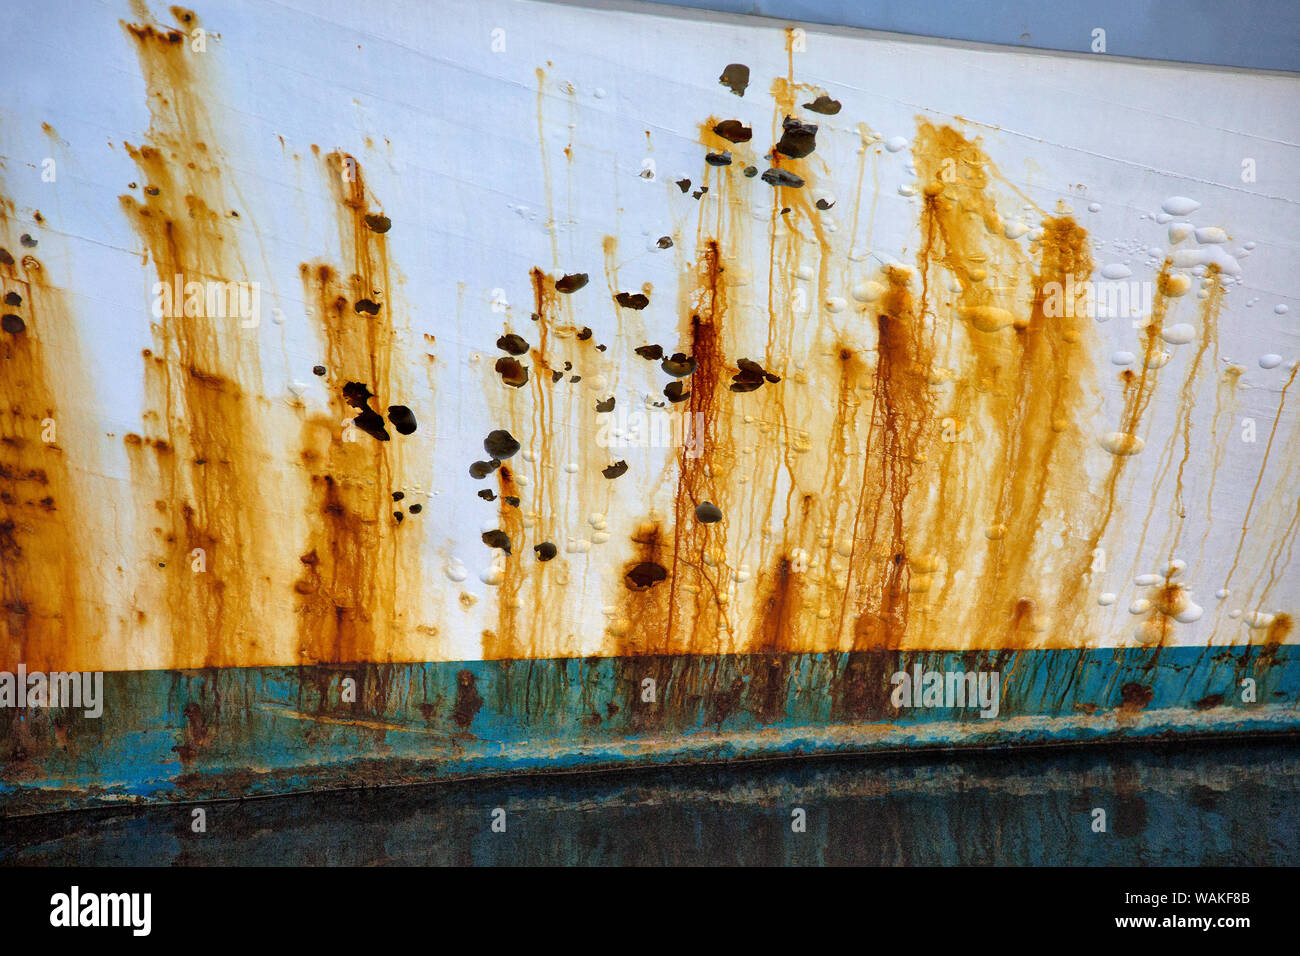 USA, Oregon, Charleston. Pintura oxidado en el lado del barco de pesca comercial. El crédito como: Jean Carter Jaynes / Galería / DanitaDelimont.com Foto de stock